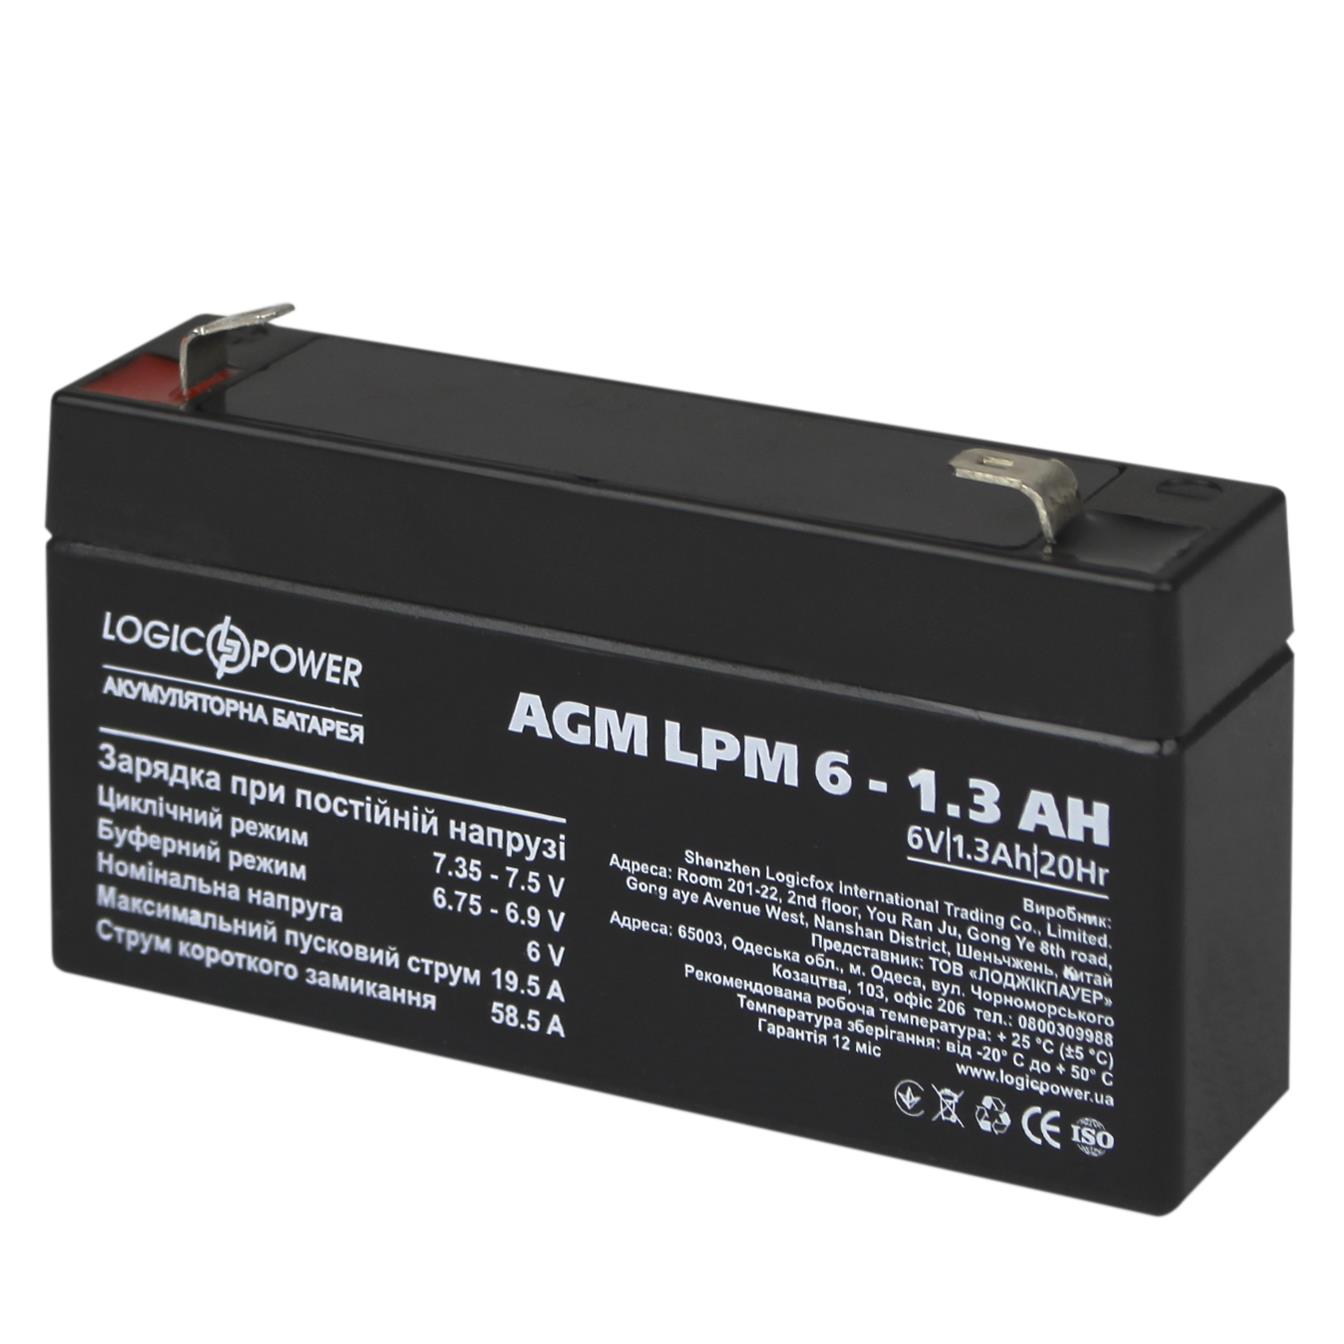 Акумулятор свинцево-кислотний LogicPower AGM LPM 6V - 1.3 Ah (4157)